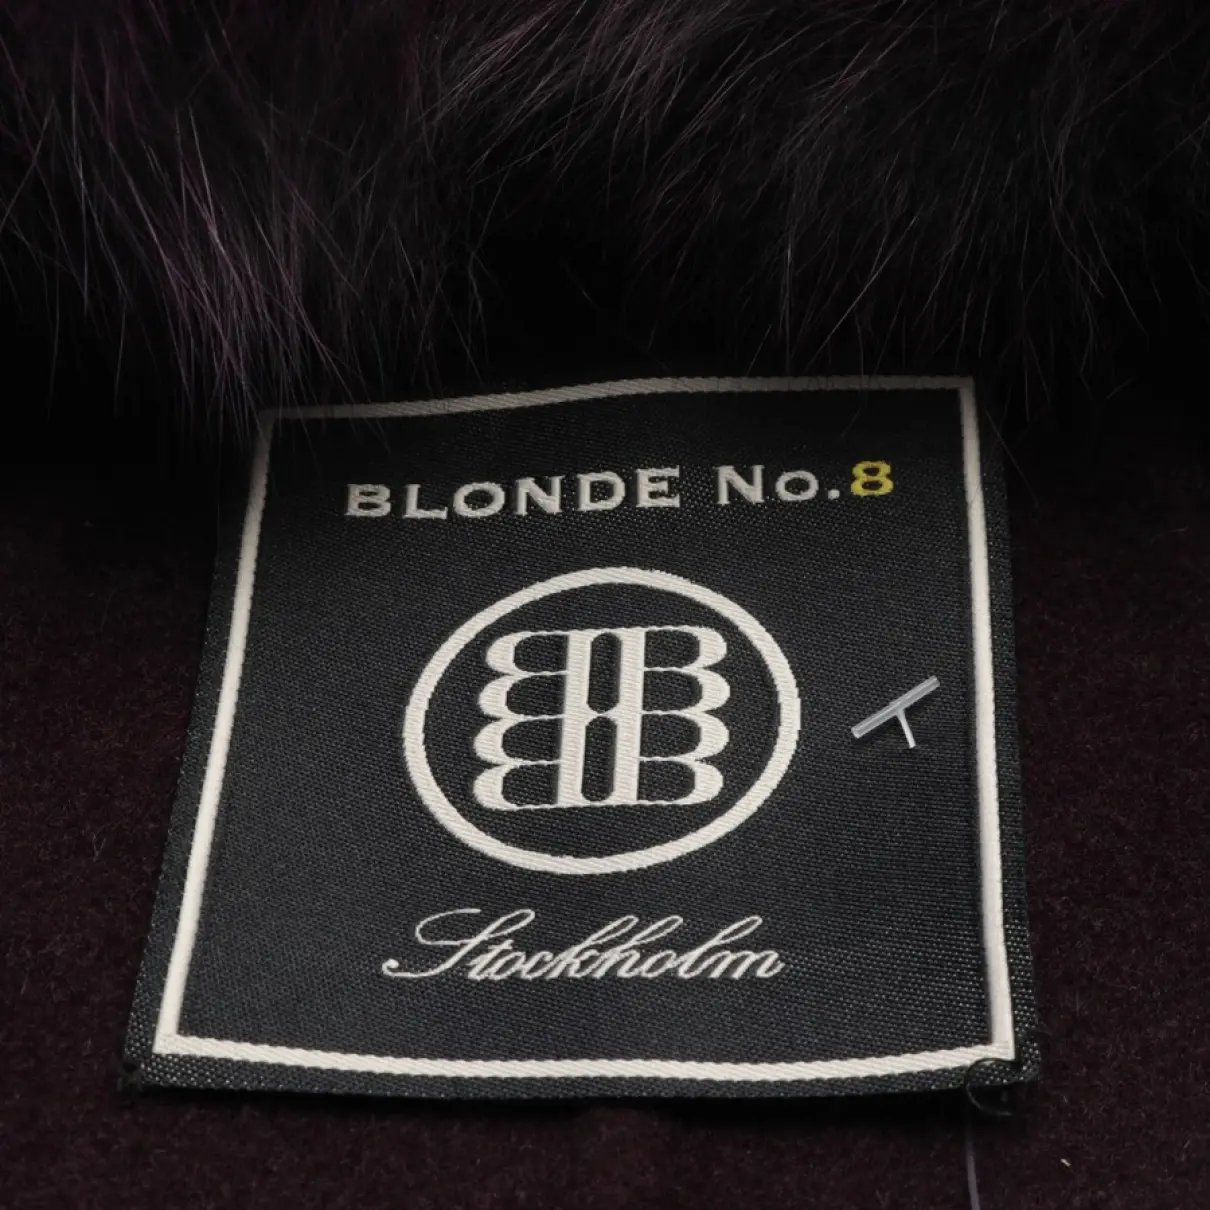 Buy Blonde No.8 Wool jacket online